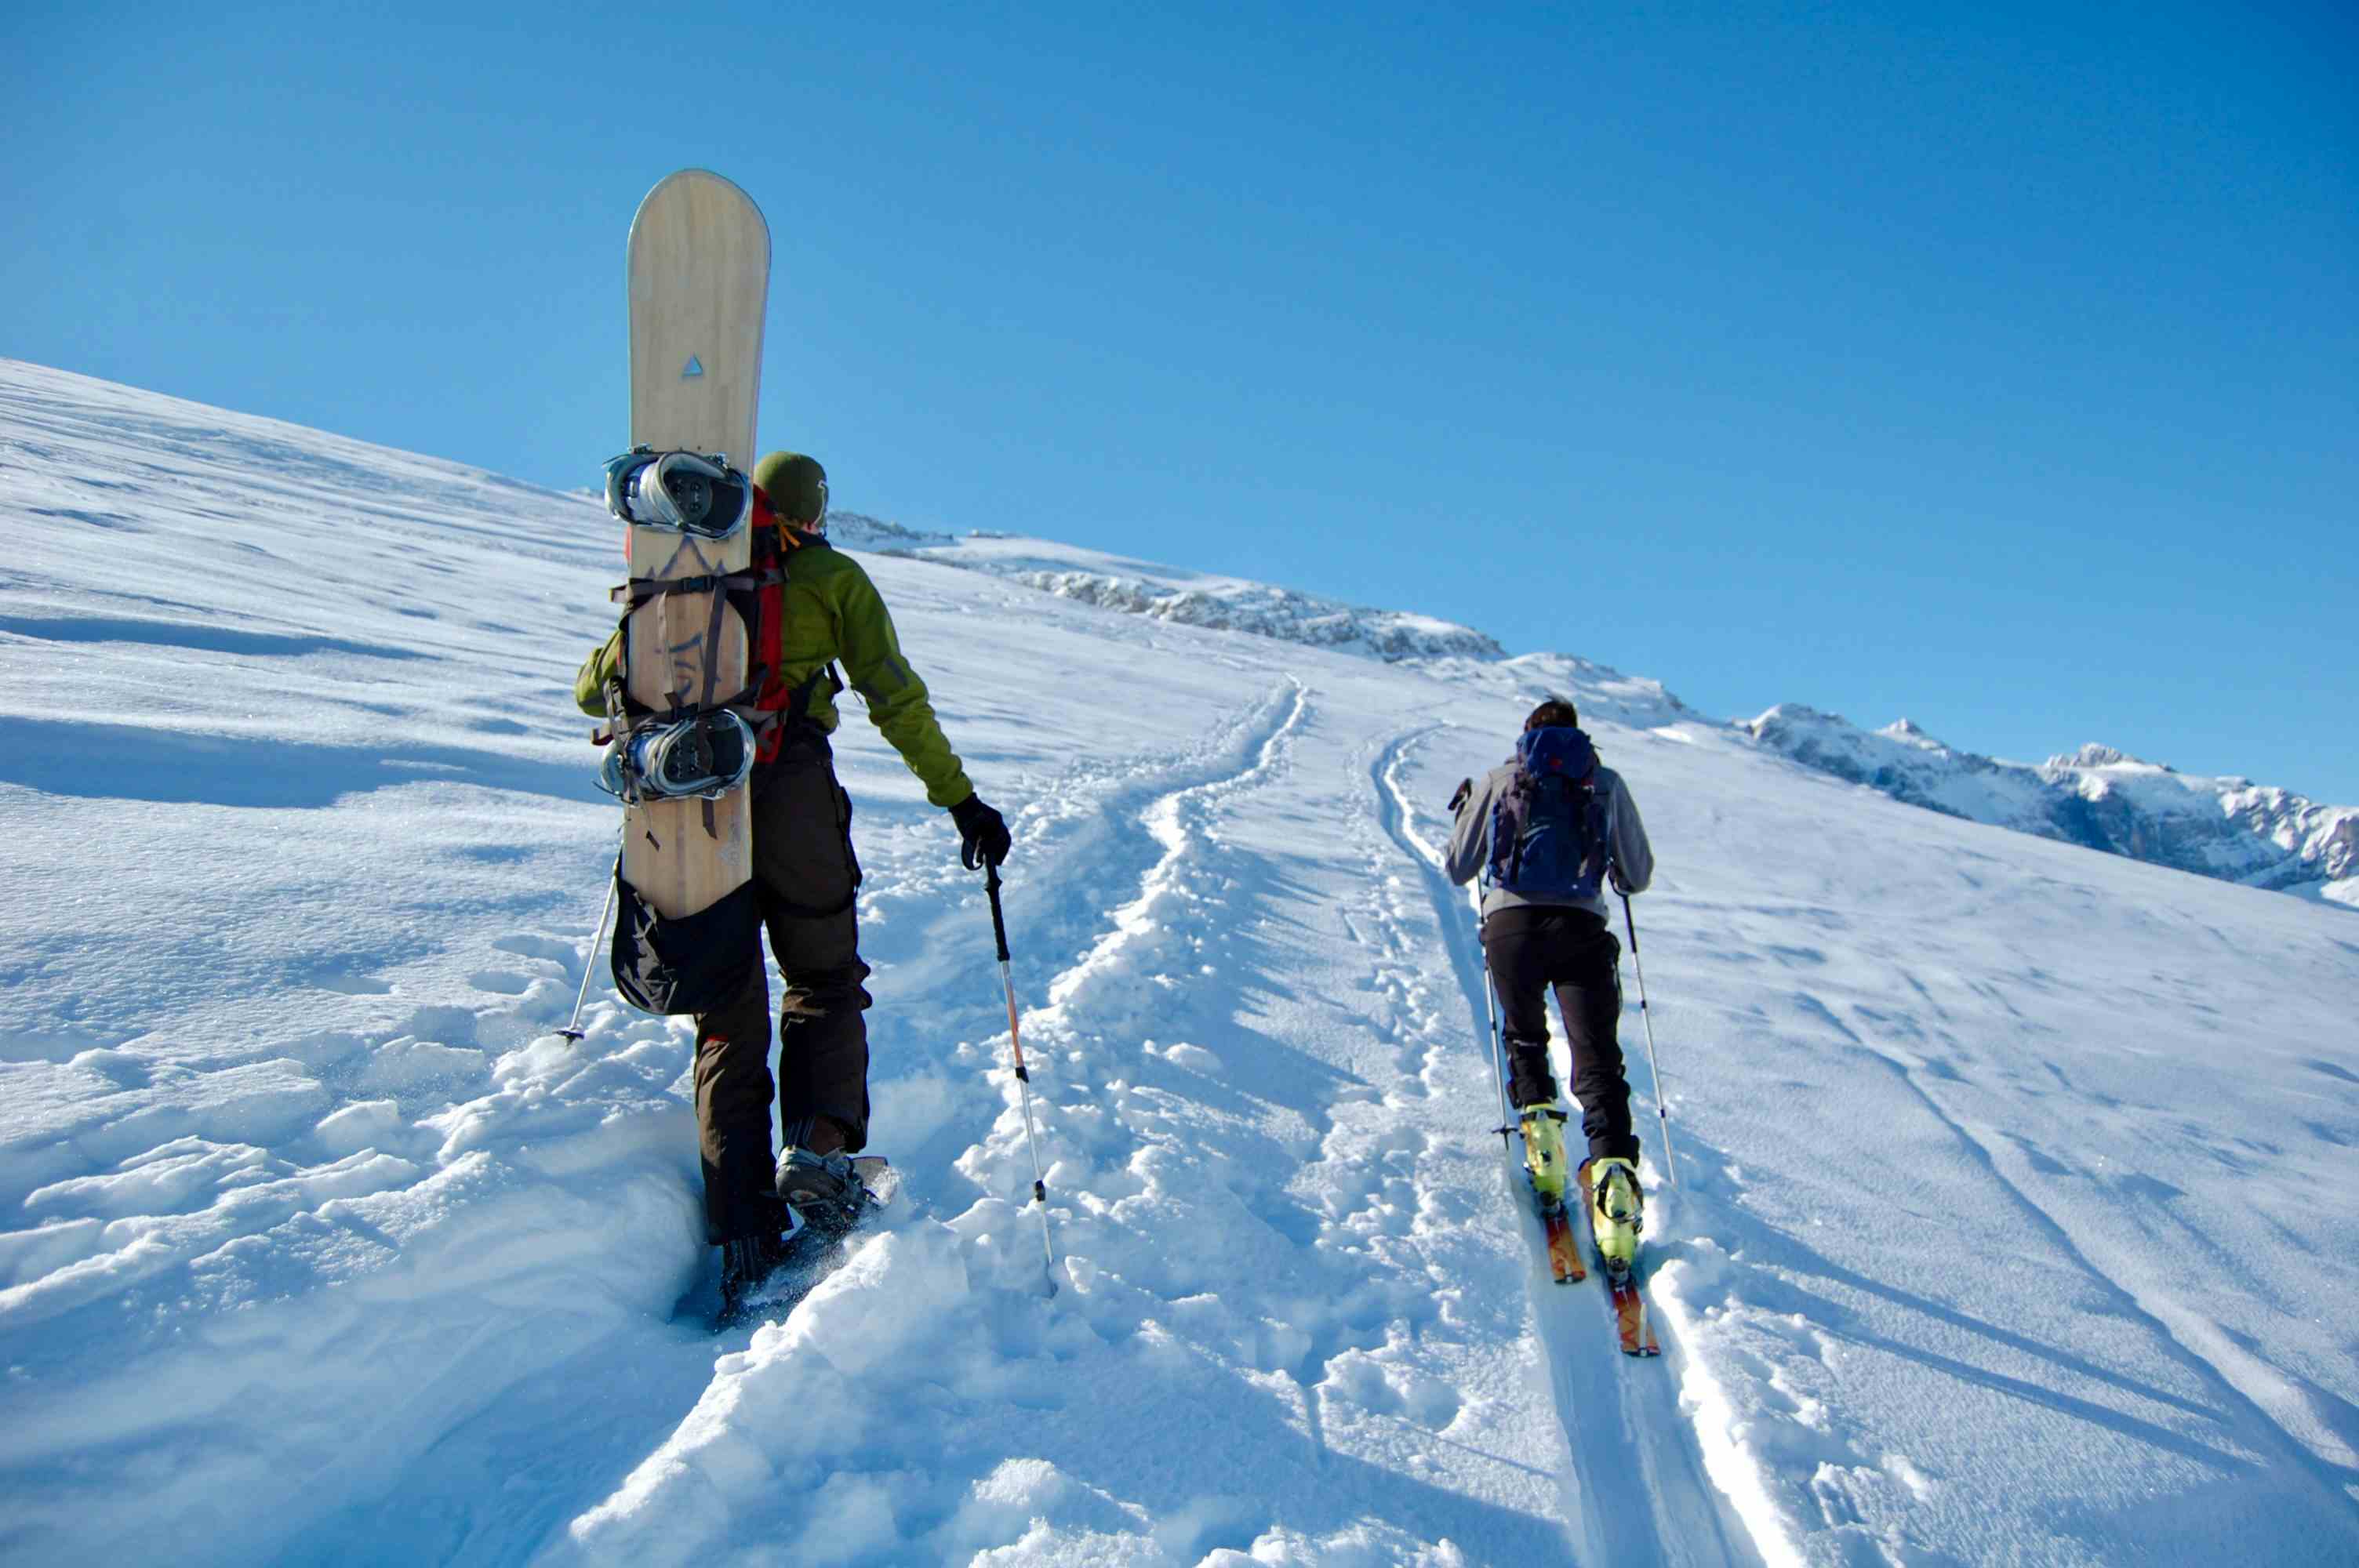 Strikte Trennung der Aufstiegsspuren: Links Schneeschuhe, rechts Ski